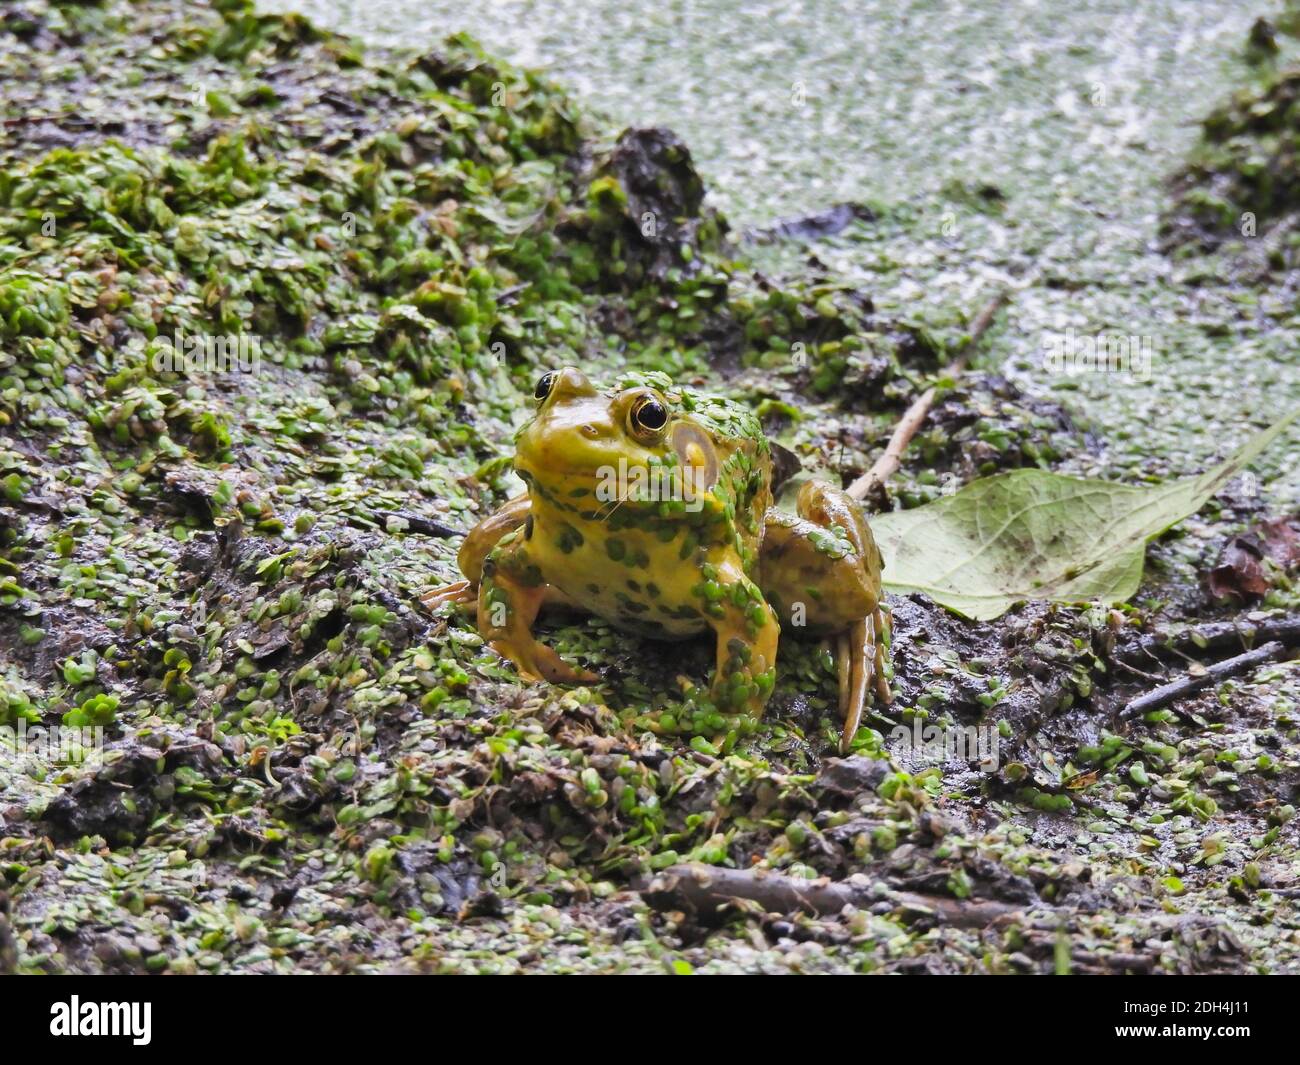 Bullfrog sitzt auf Muddy Pond Bank bereit, aus zu springen Wasser in Duckweed bedeckt, die auch an der klebt Ufer und Frosch Stockfoto